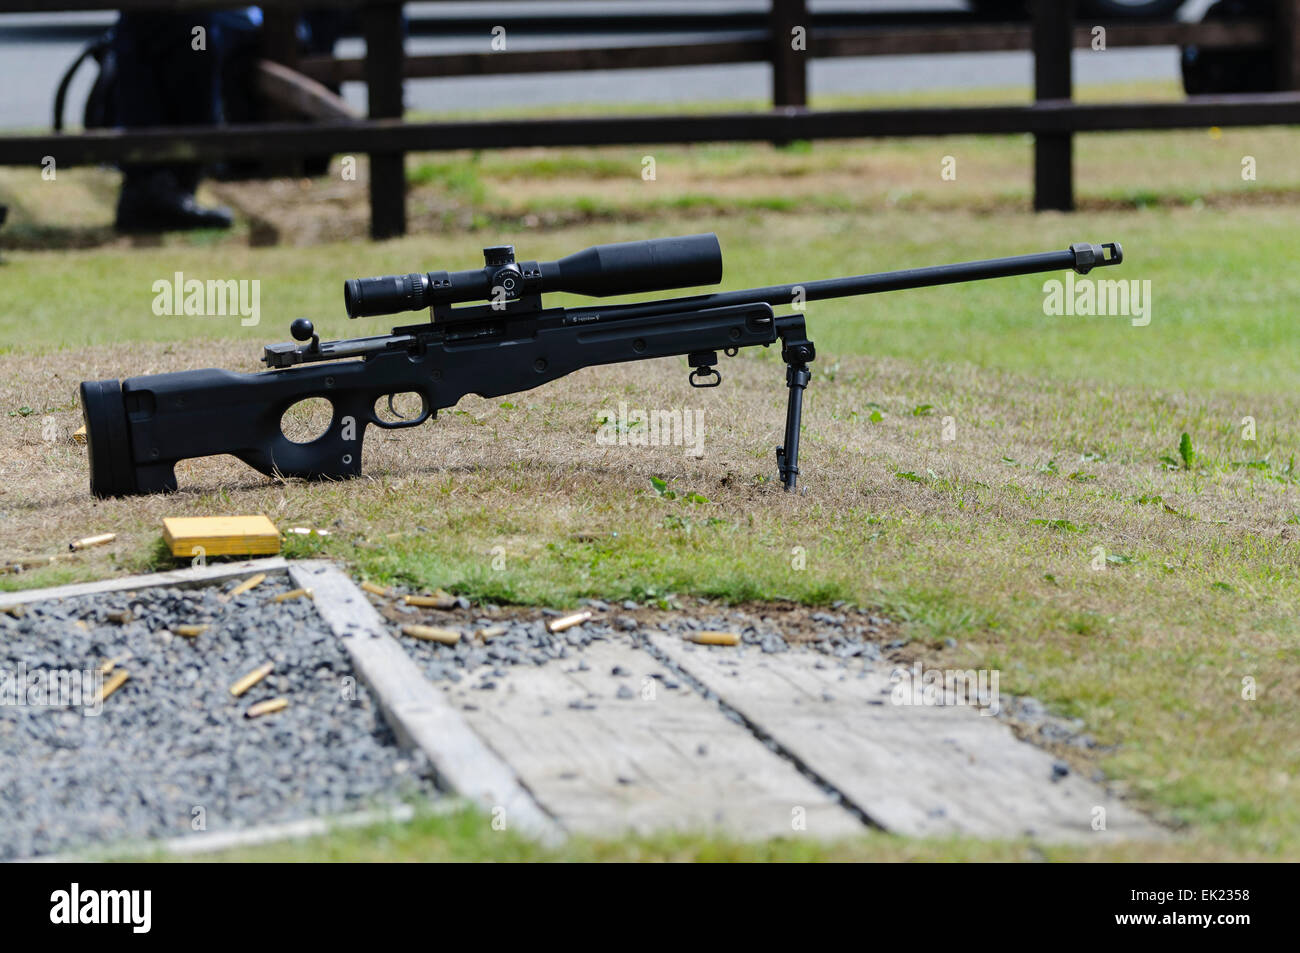 Remington 700P (Polizei version) Repetierbüchse mit zielfernrohren an einem Schießstand in Nordirland während Polizei Ausbildung ausüben. Stockfoto